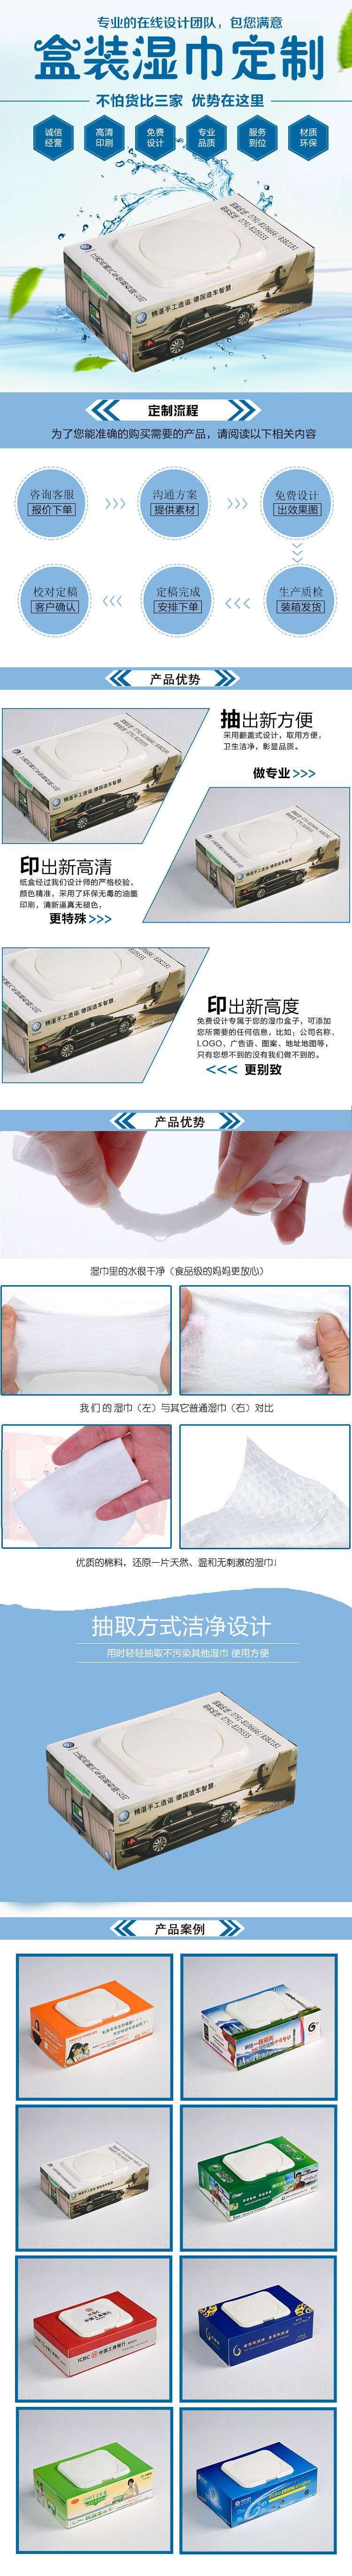 汽車貿易濕紙巾.jpg